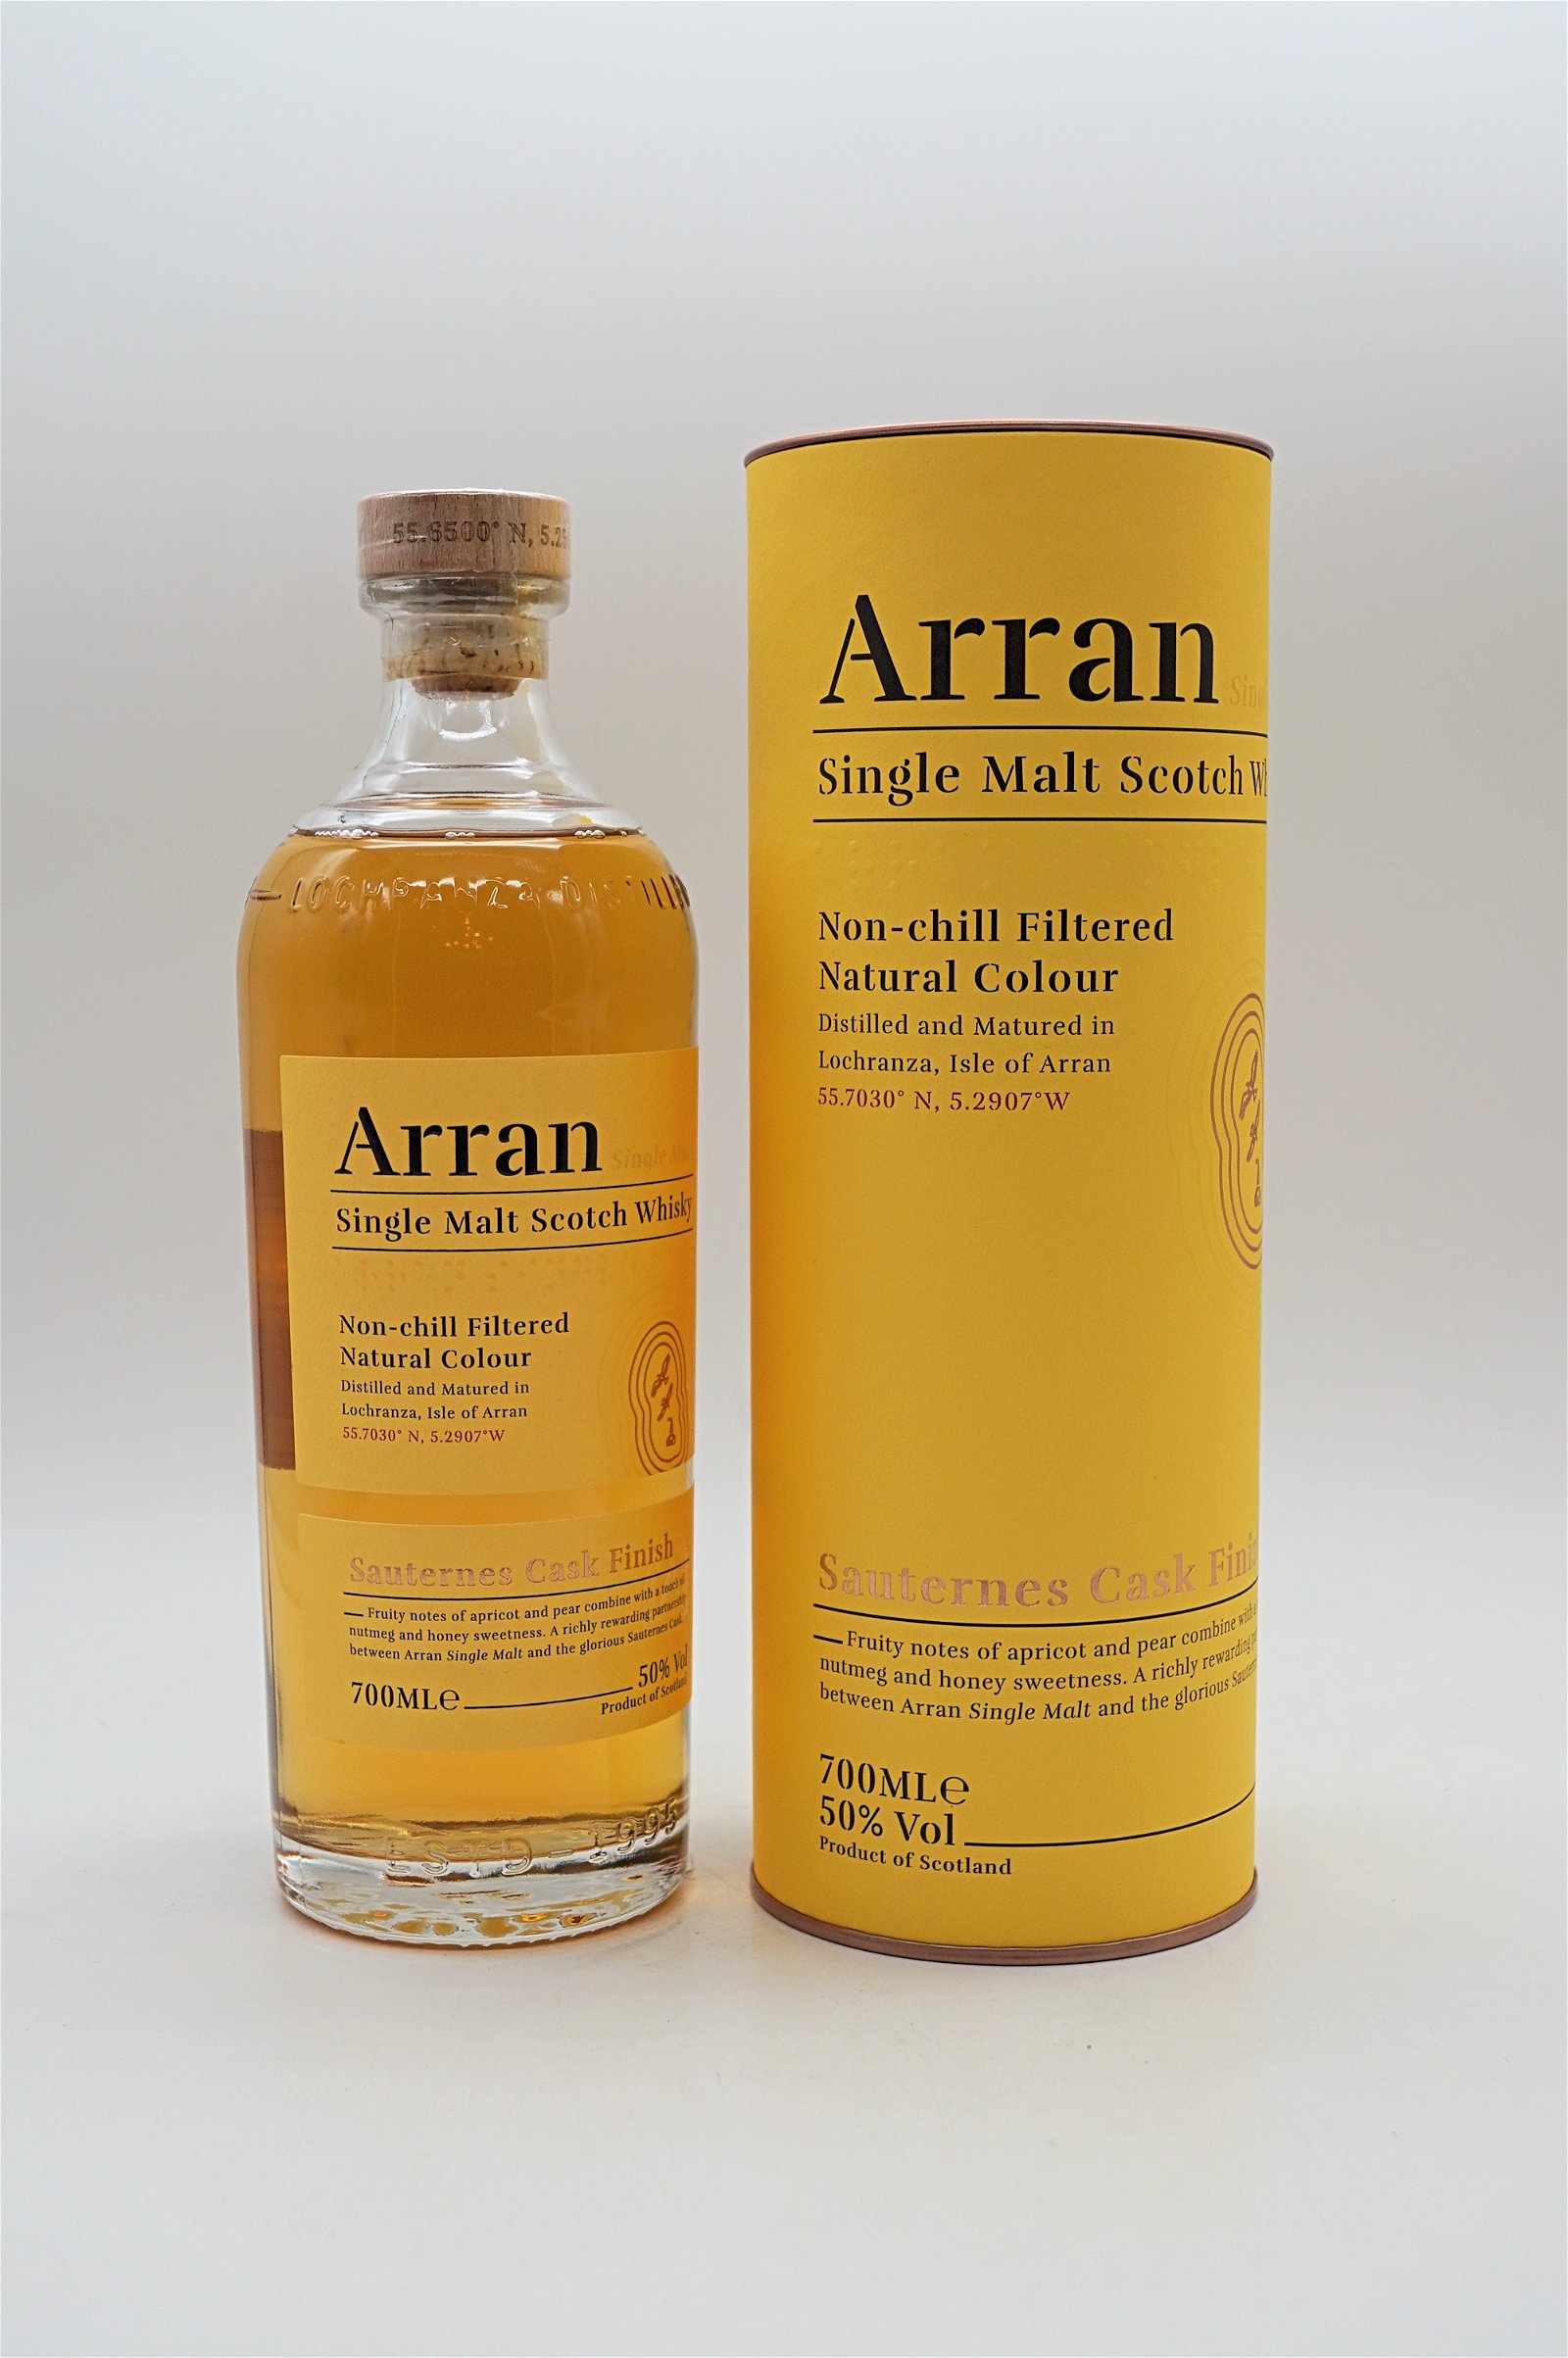 The Arran Sauternes Cask Finish Single Malt Scotch Whisky